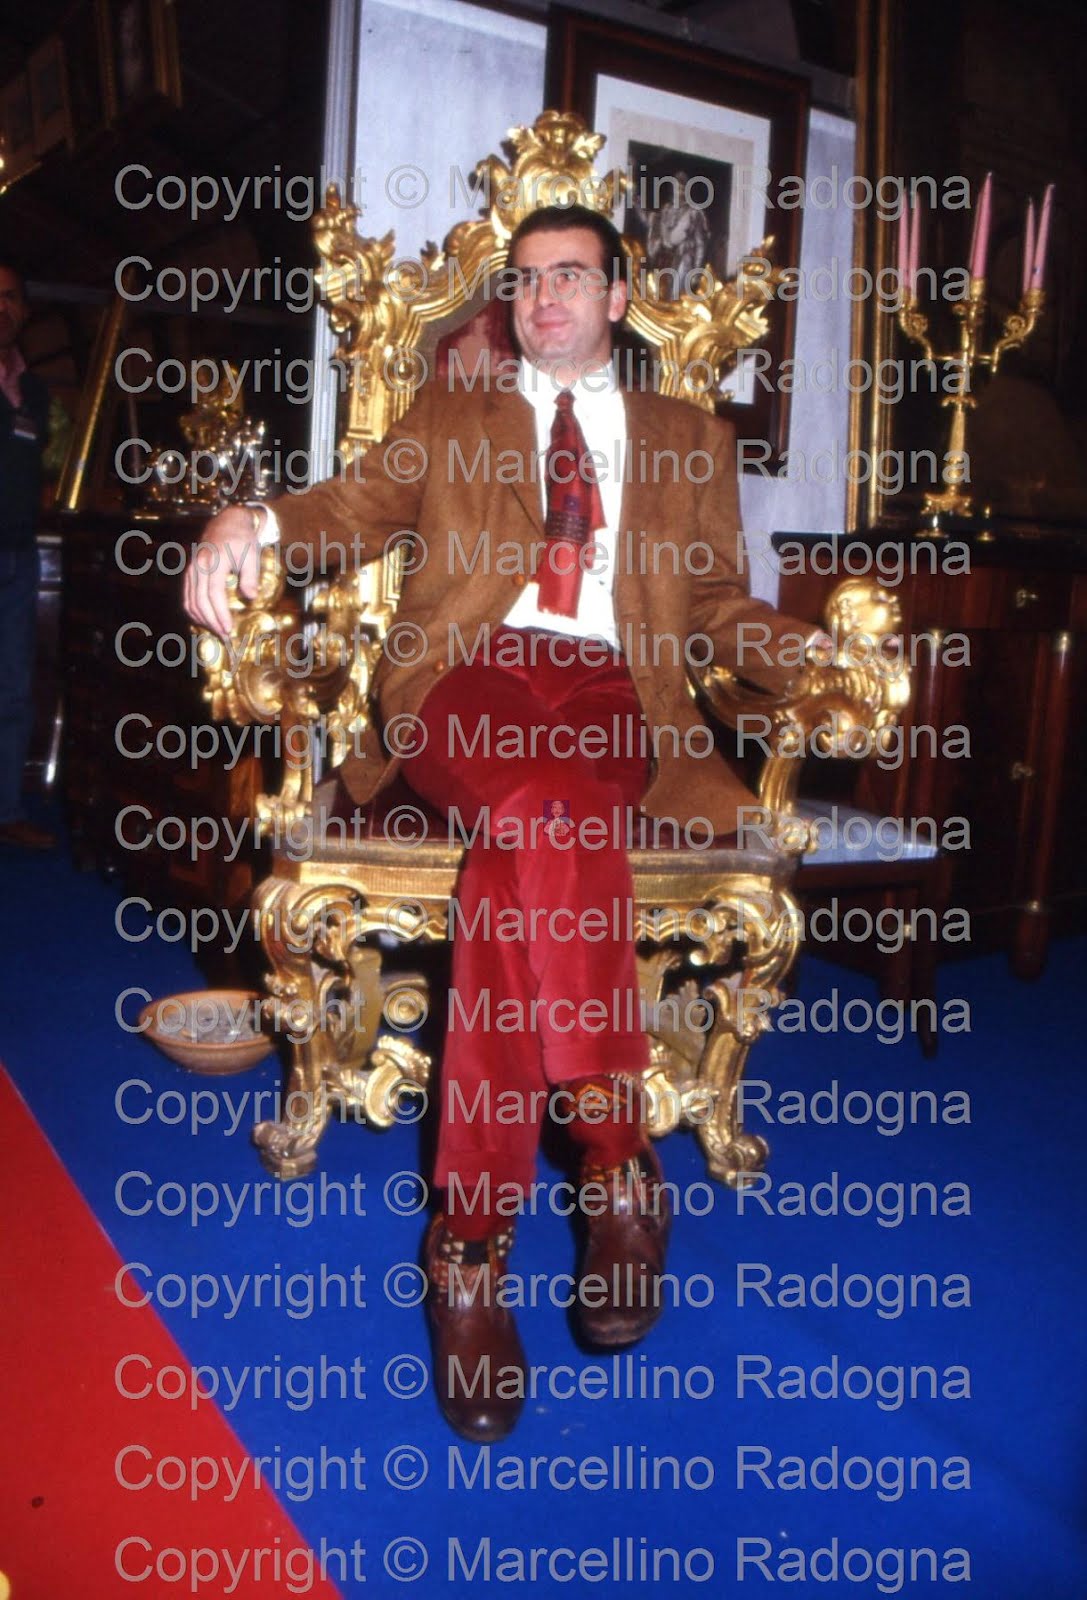 Marcellino Radogna - Fotonotizie per la stampa: Giovanni Torlonia